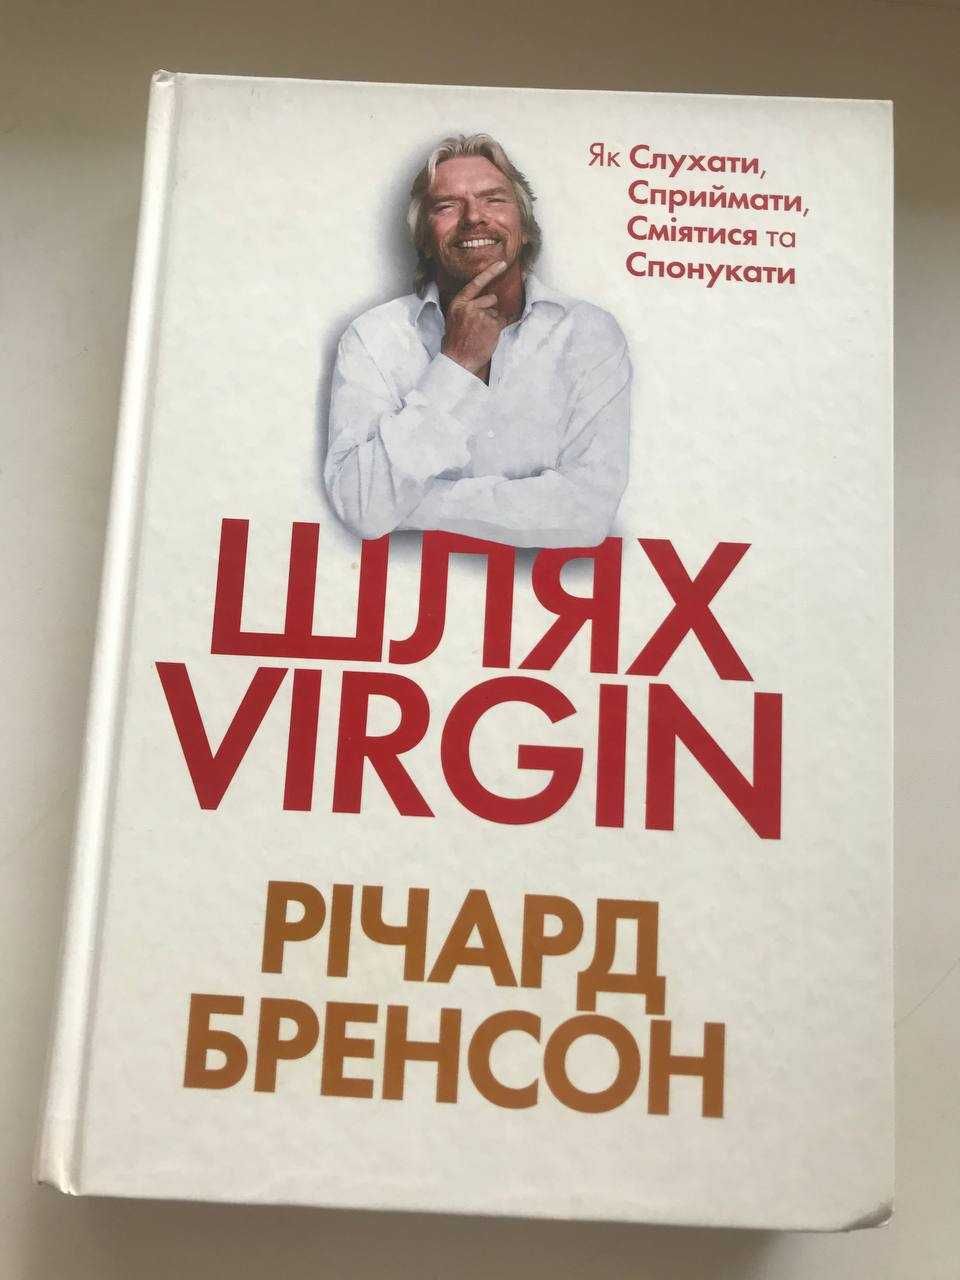 Книга Ричард Бренсон "Шлях Virgin"